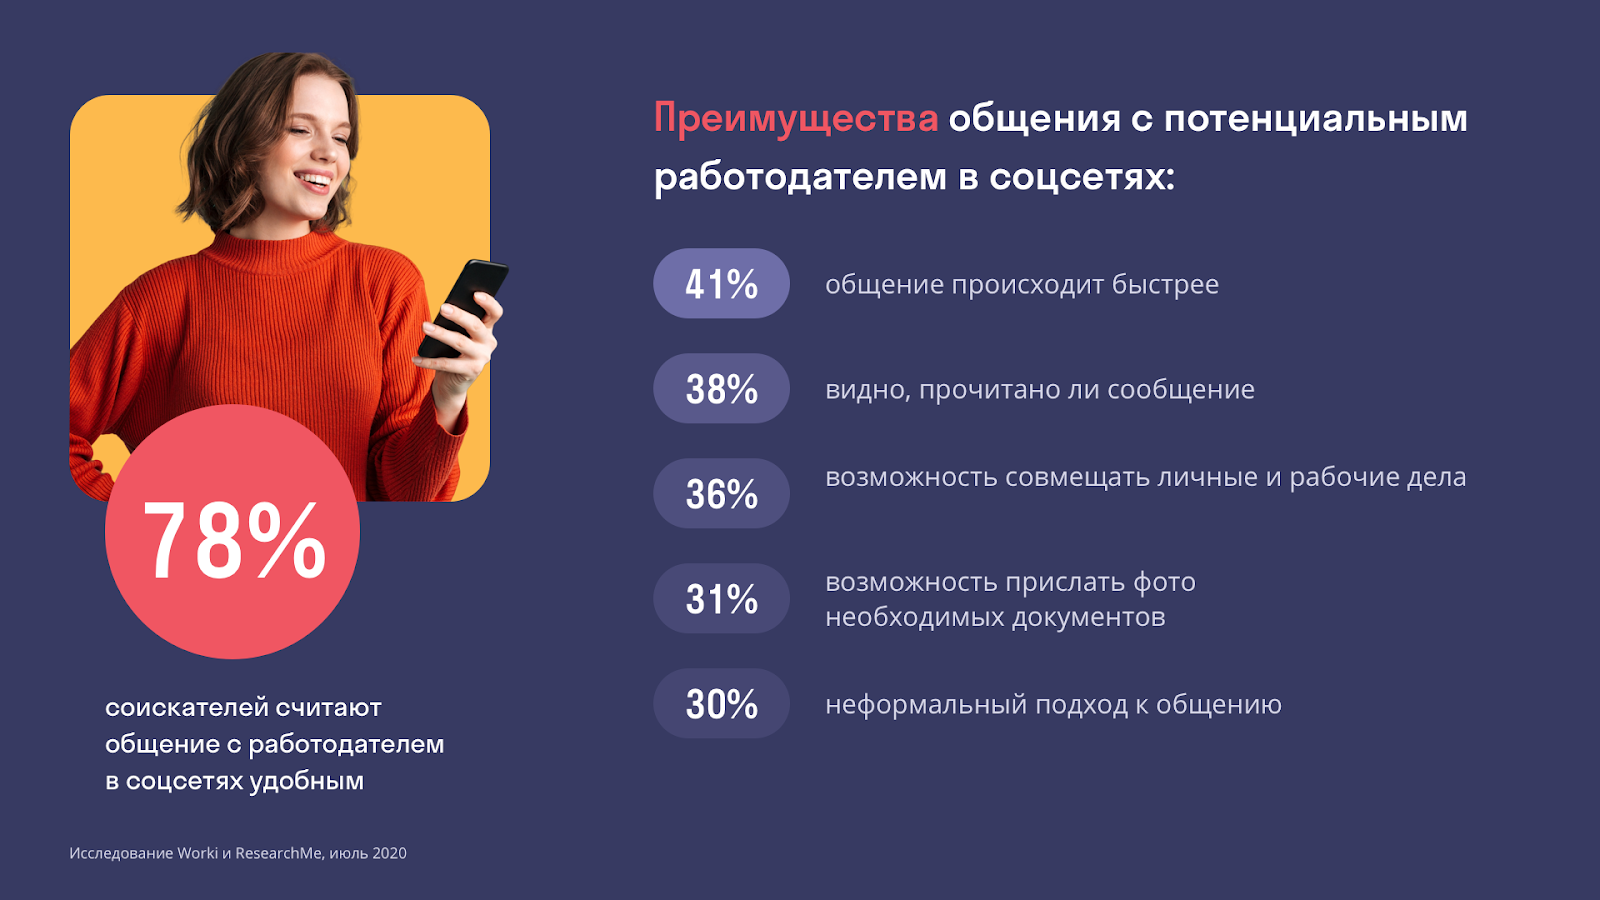 Каждый третий россиянин ищет работу через социальные сети. Исследование